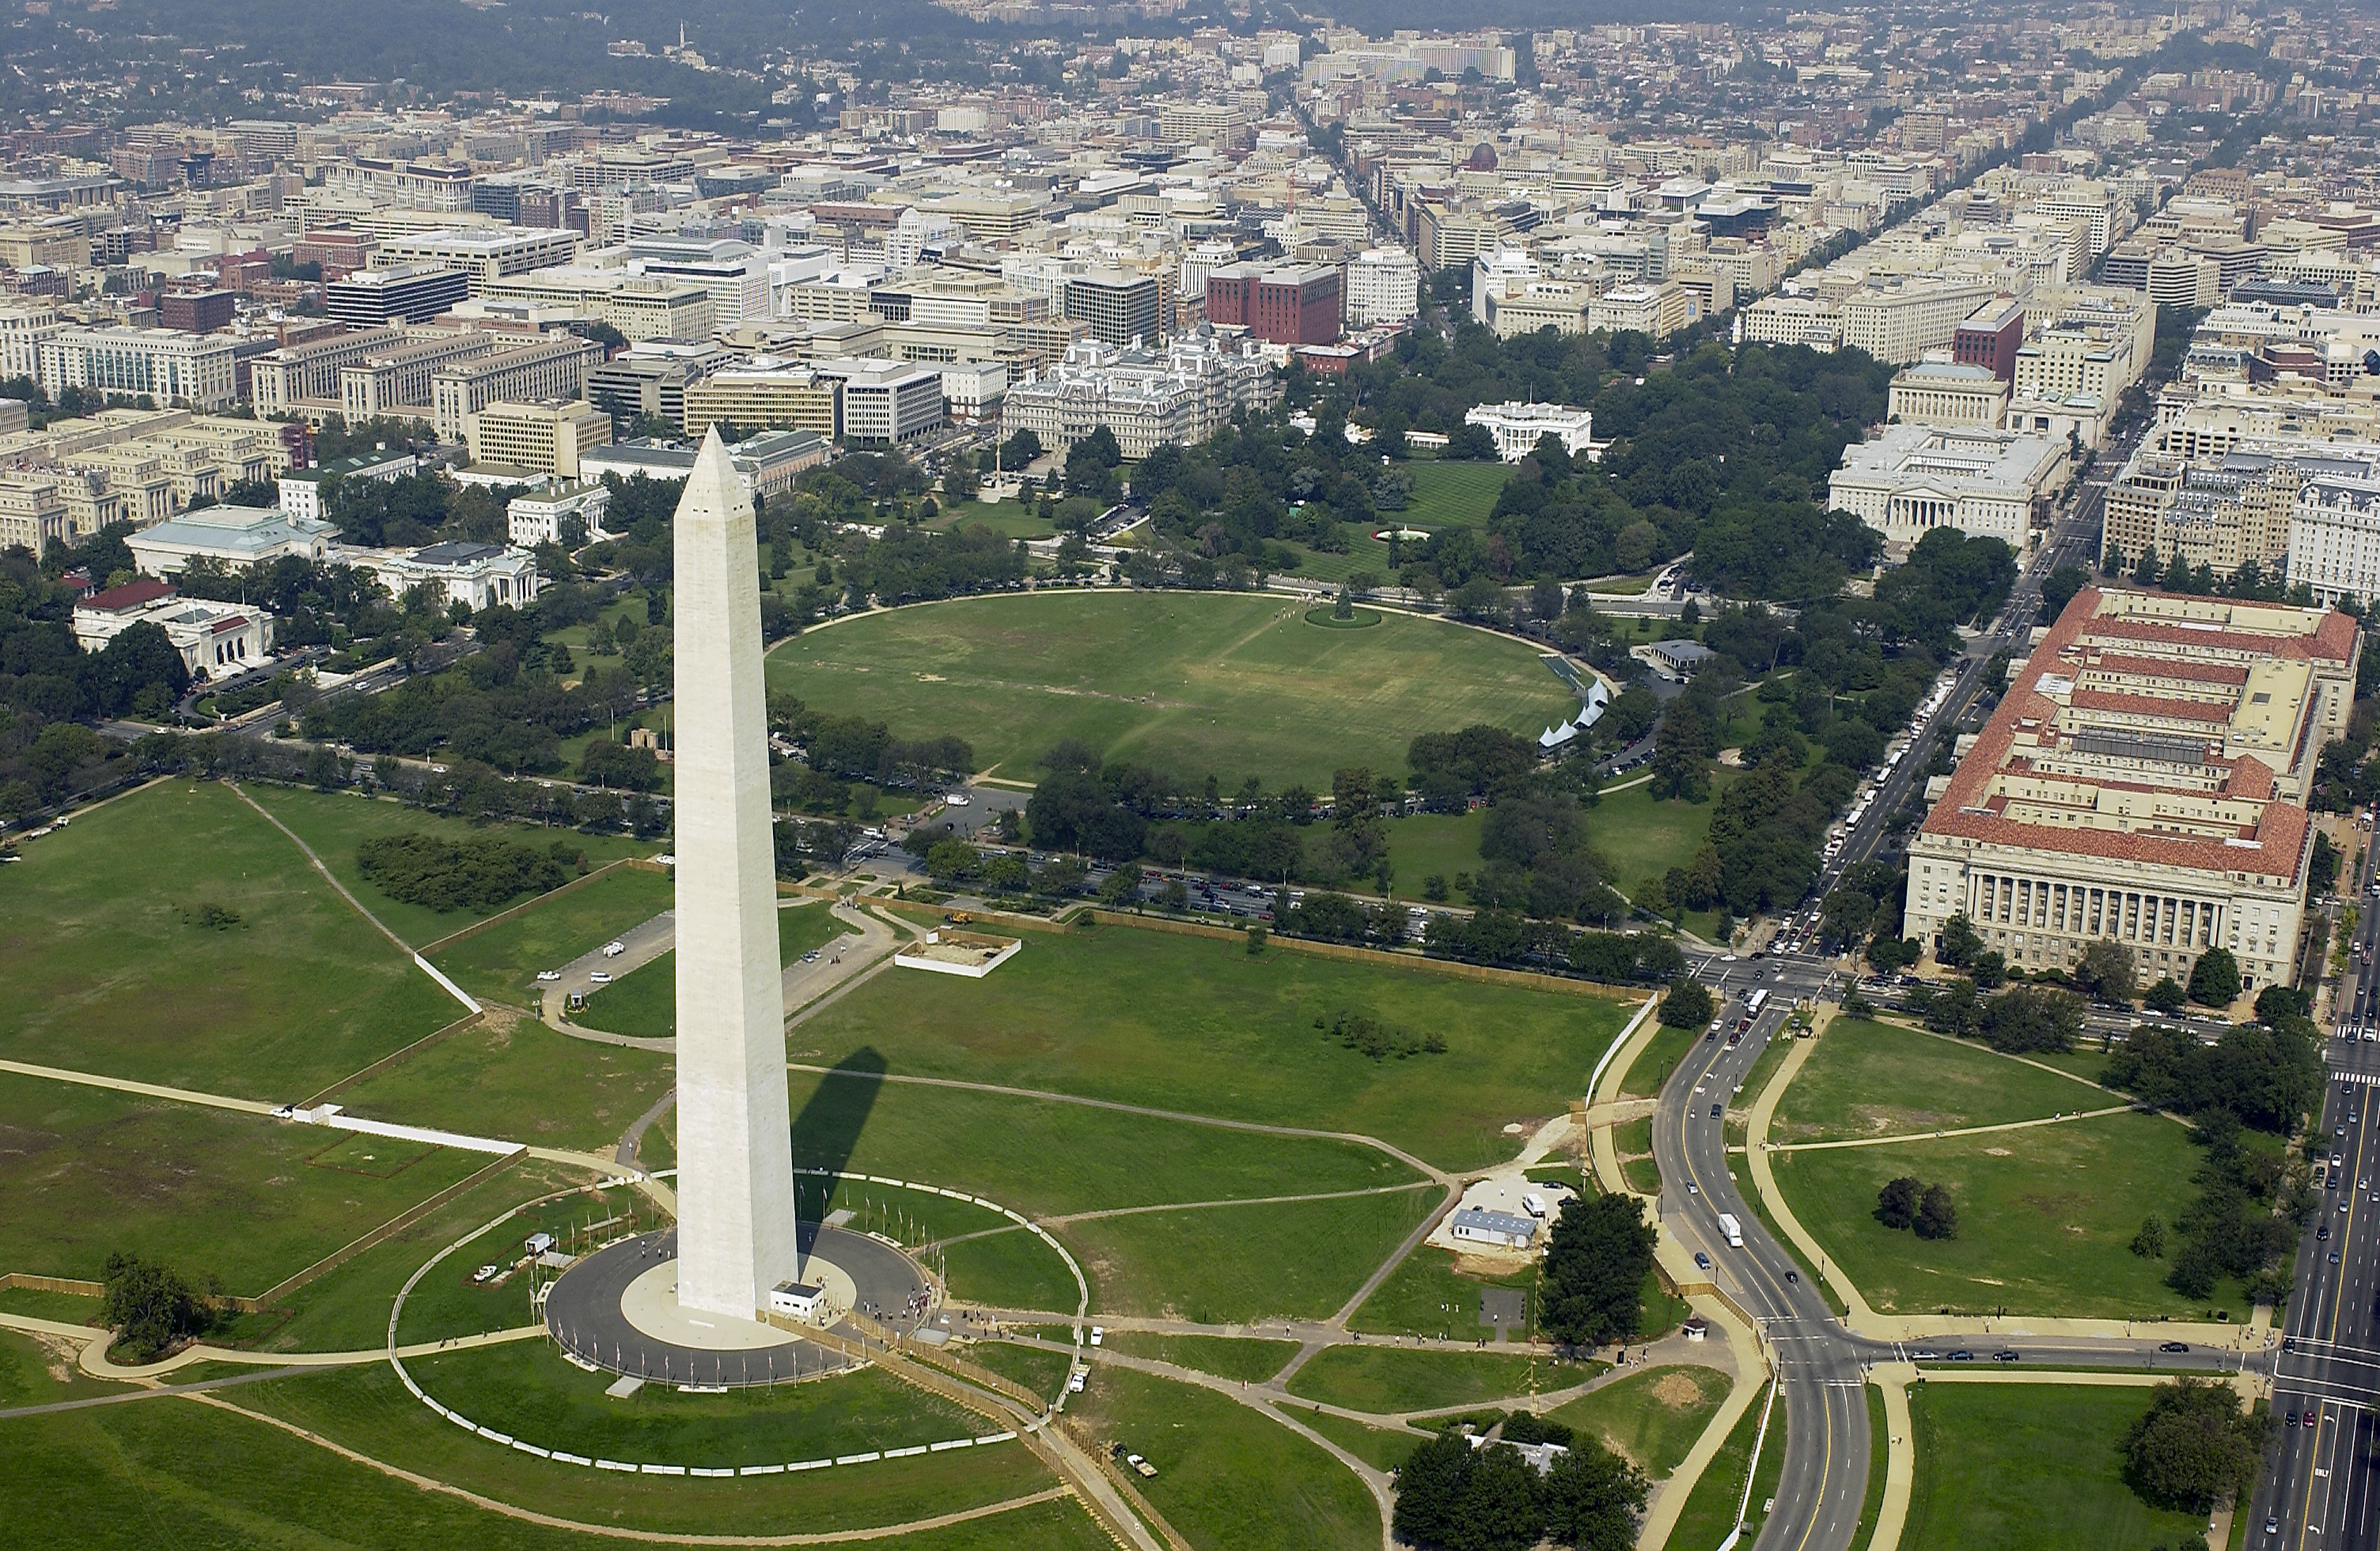 Aerial view of the Washington Monument. Photo taken on September 26, 2003.